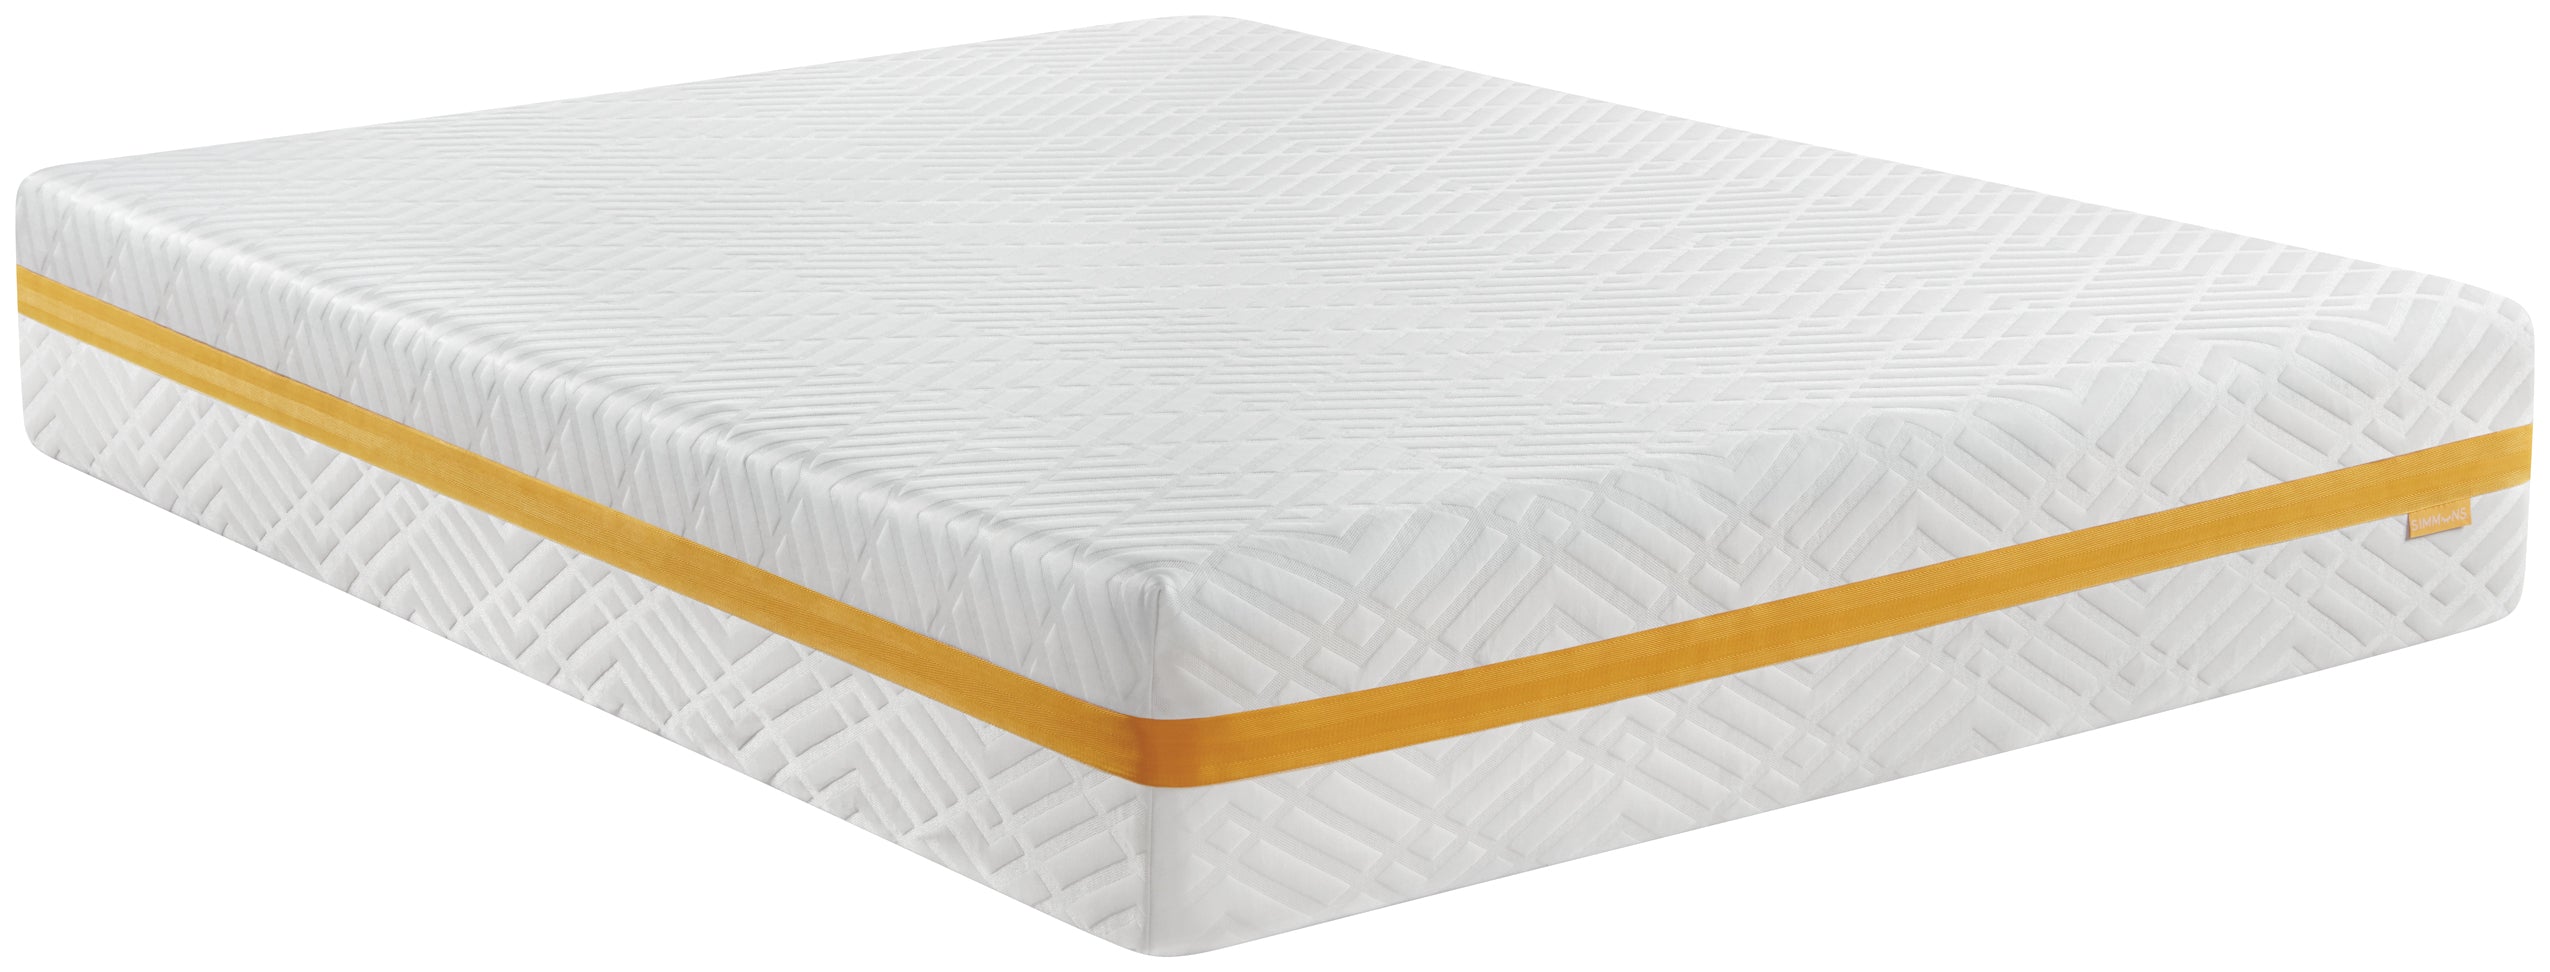 Foam - Plush Mattress full mattress view